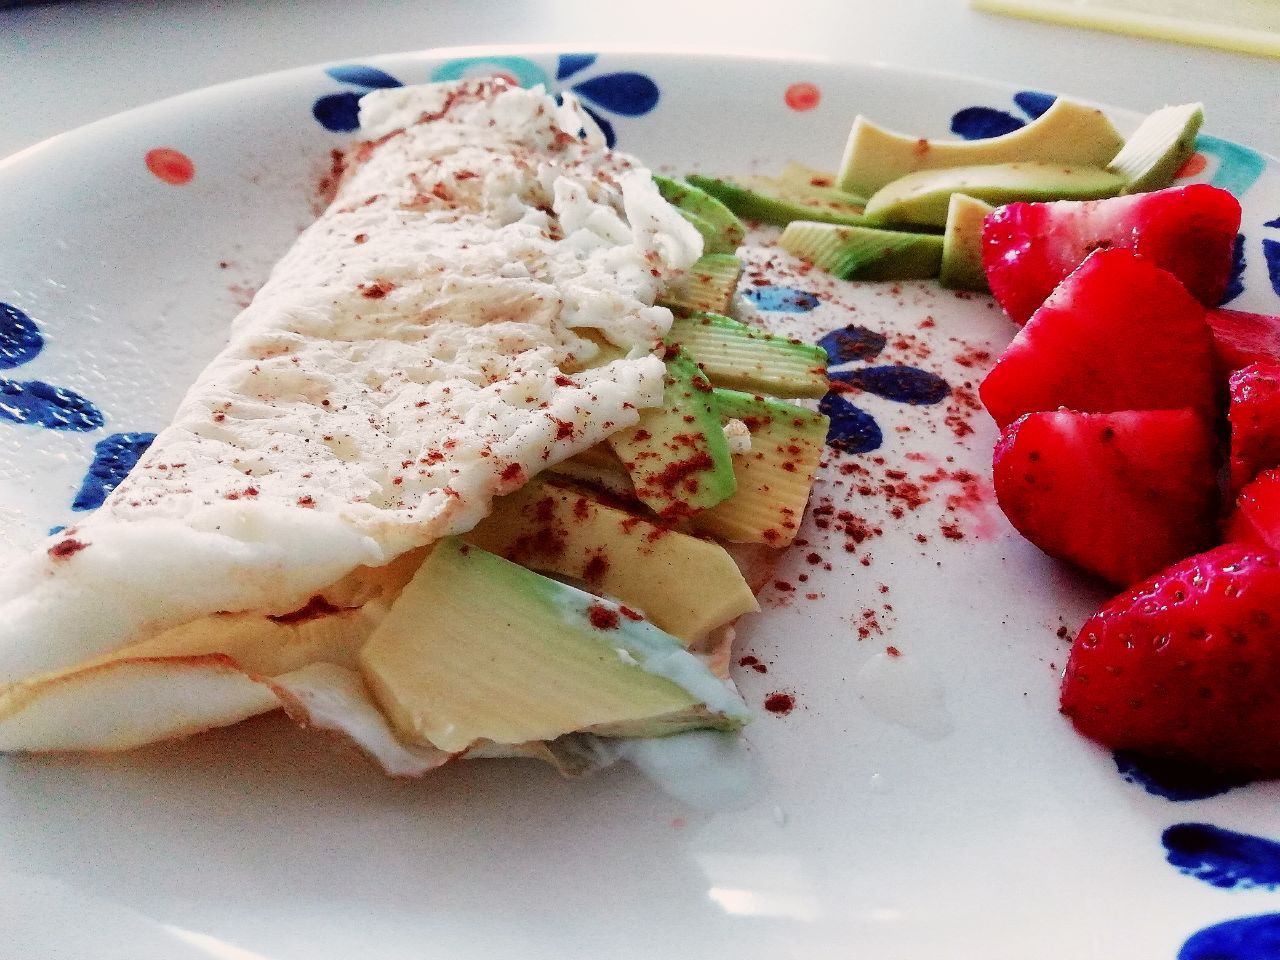 Ricette light e dietetiche senza burro: omelette di albumi con yogurt Skyr avocado fragole e cannella!